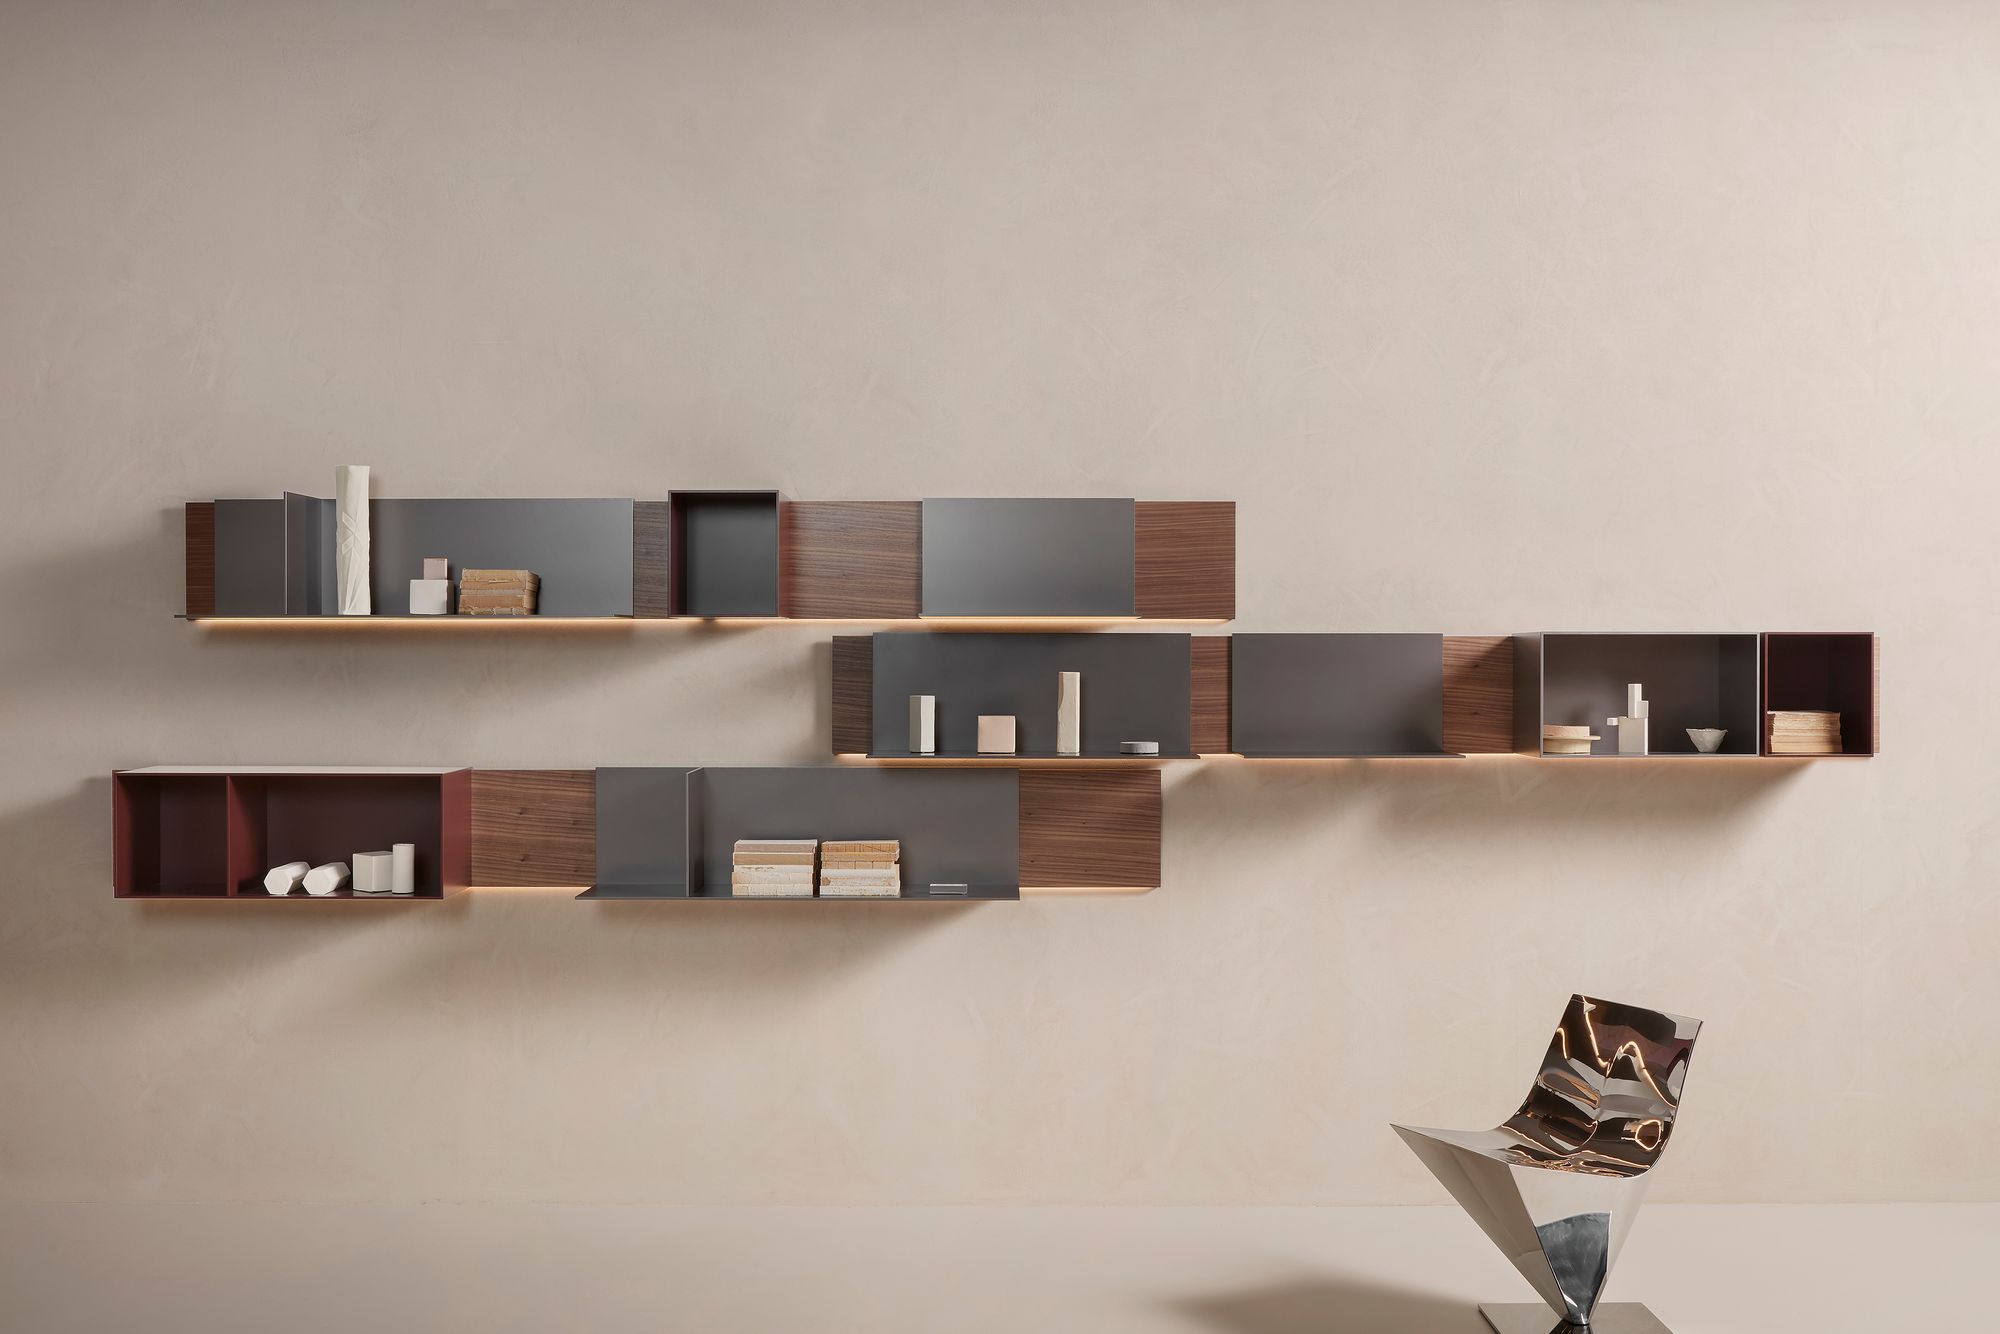 Nueva estantería de diseño modular de mdf italia blanca, negra, madera